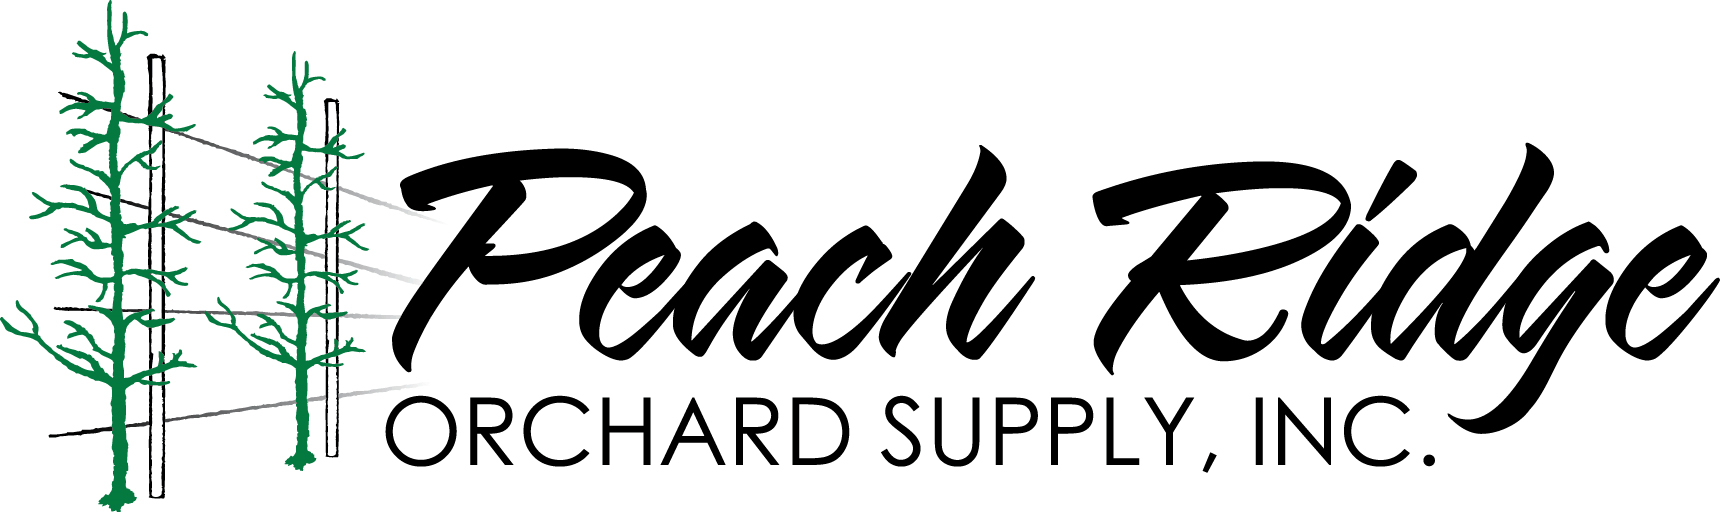 Peach Ridge Orchard Supplies